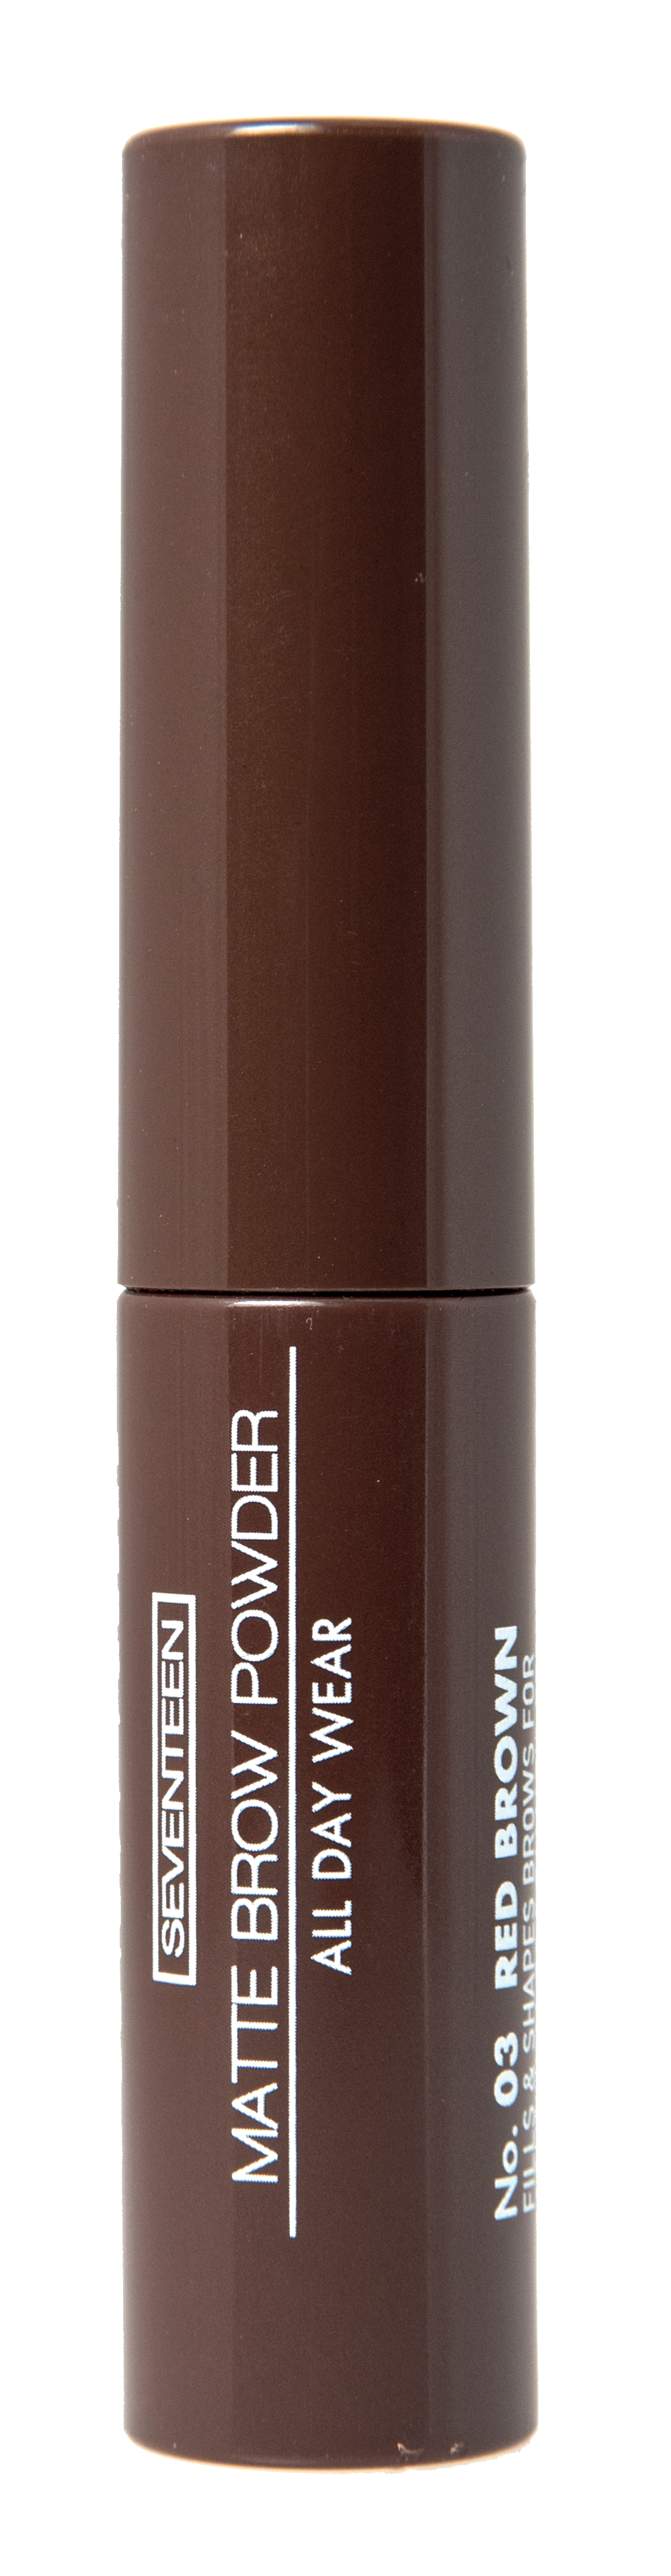 Тени-пудра для бровей с матовым эффектом Matte Brow Powder All Day Wear, 03 коричневый